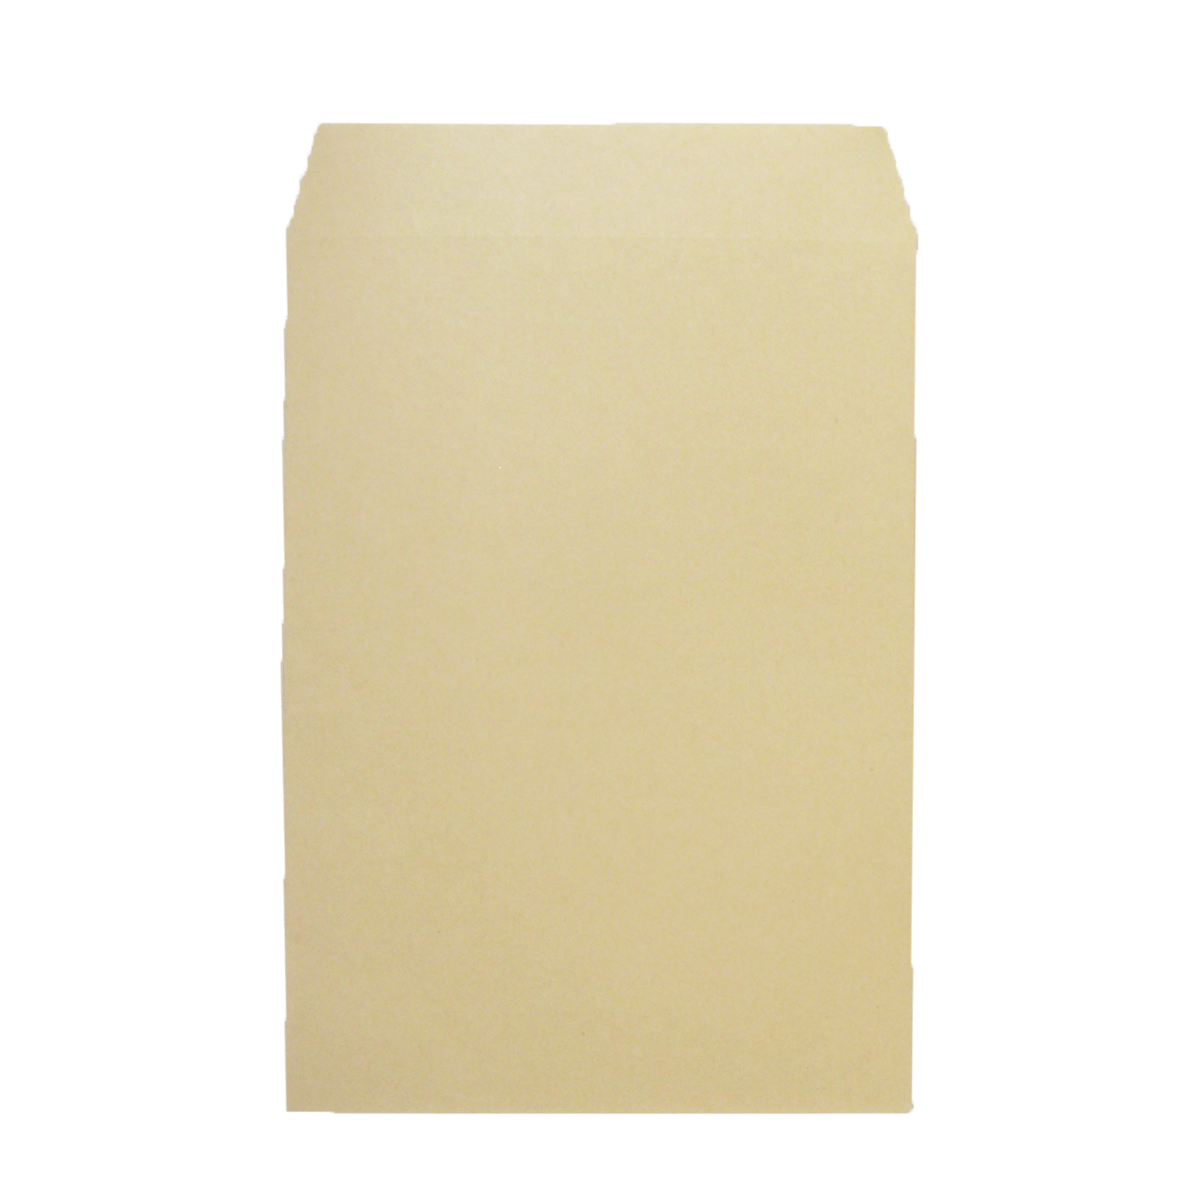 角２封筒【500枚】1箱 茶封筒/クラフト色 紙厚85g/m2 郵便枠無し 240 